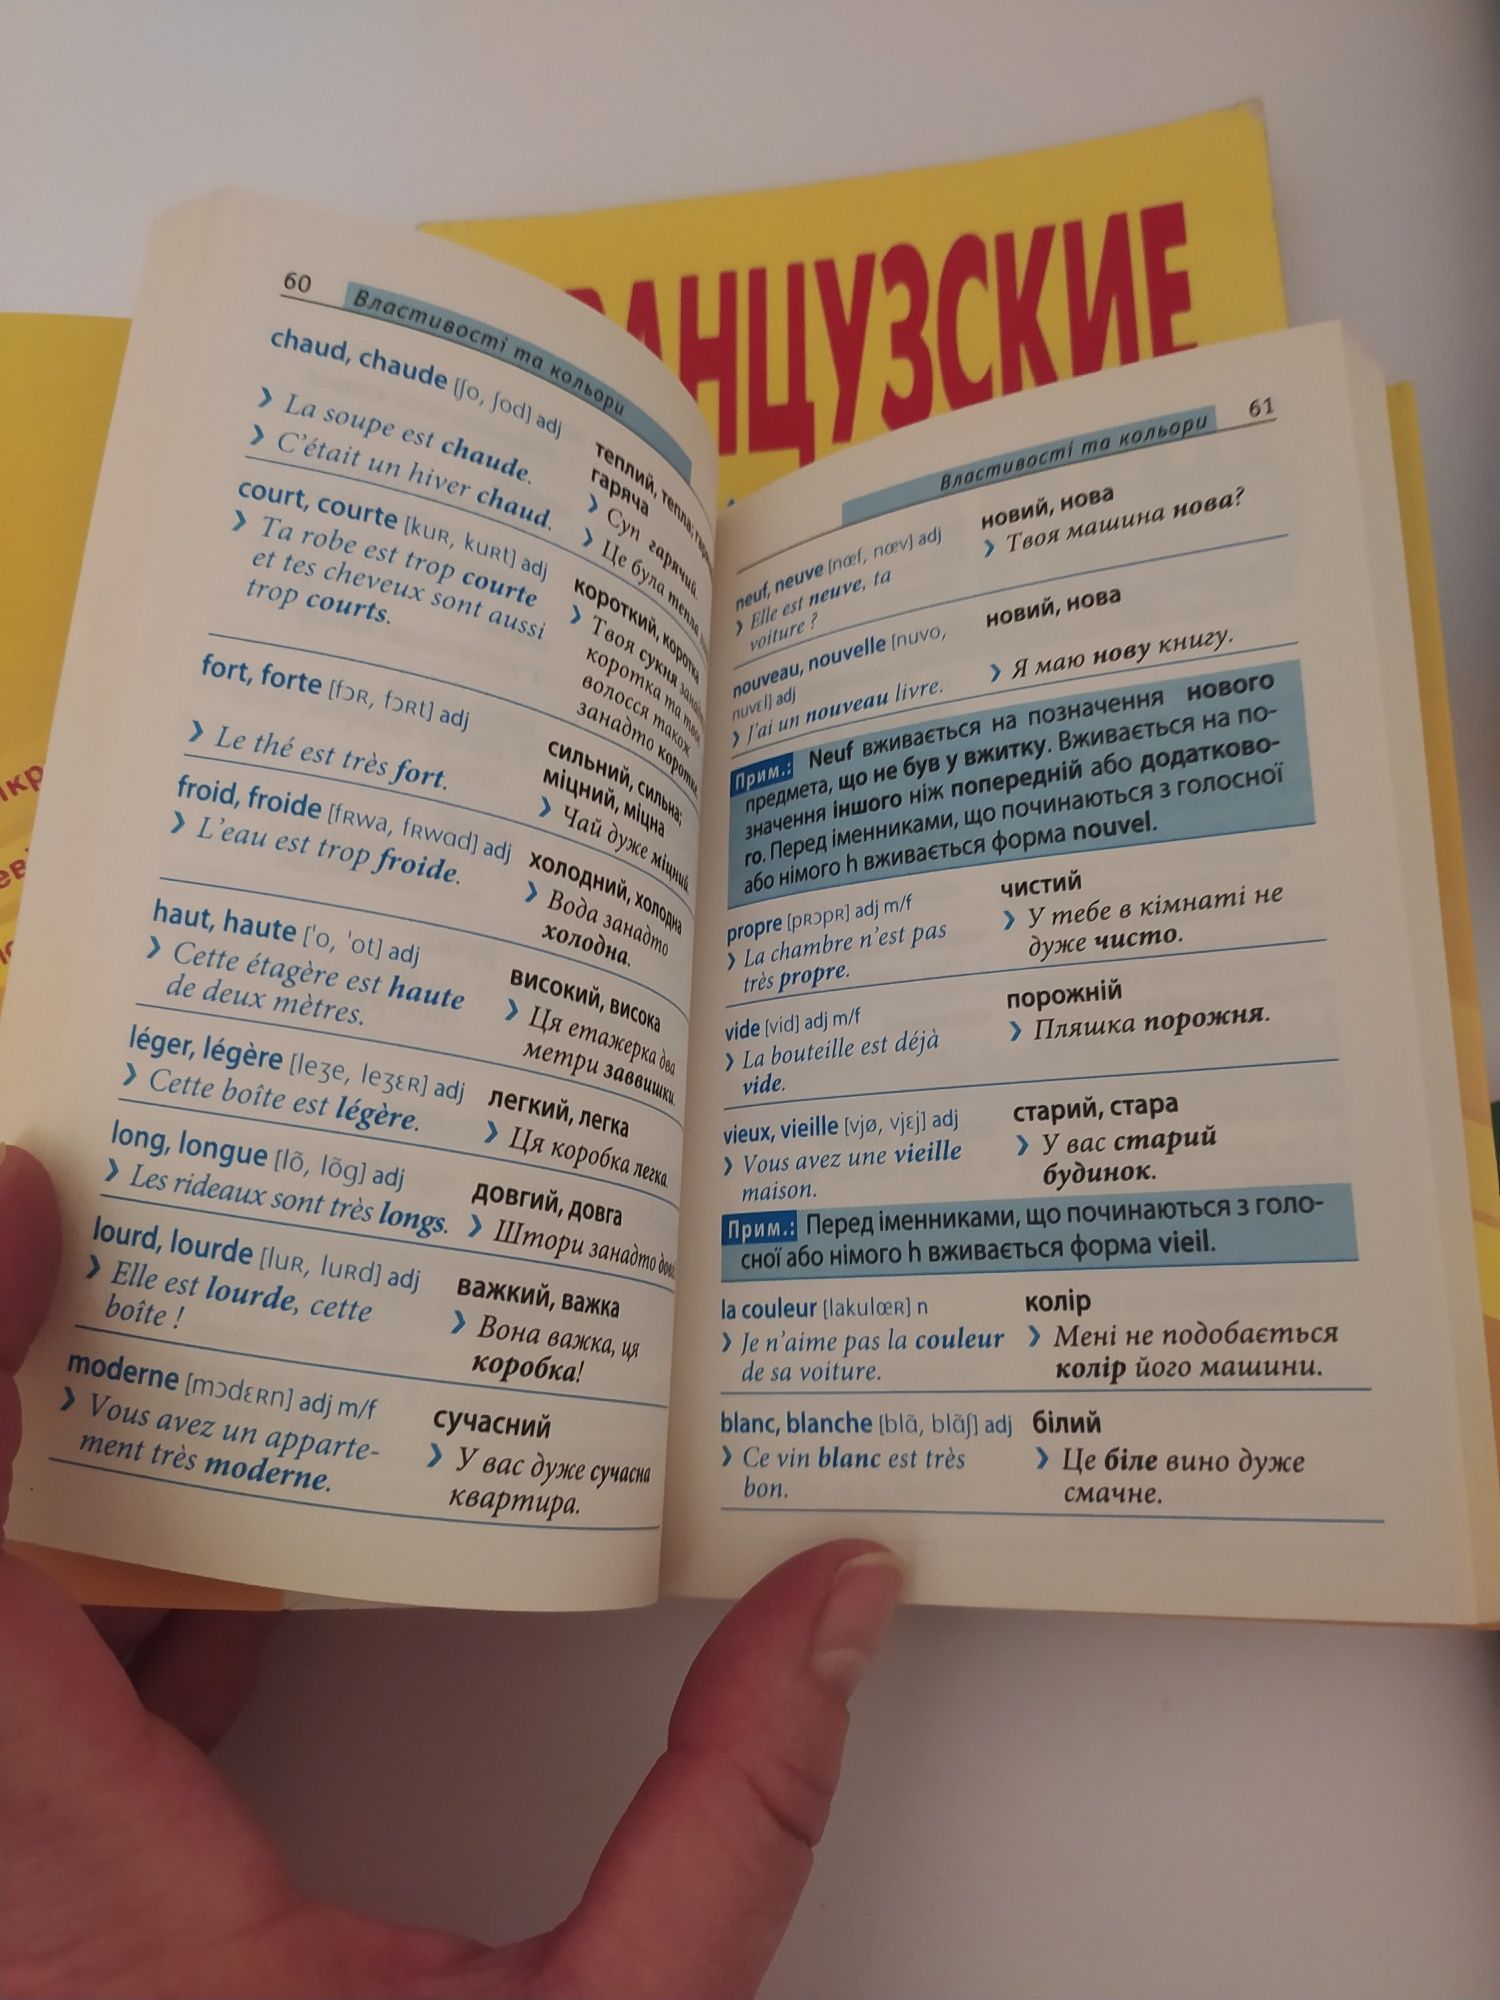 Учебник "Французский шутя" метод обучения чтению Ильи Франка